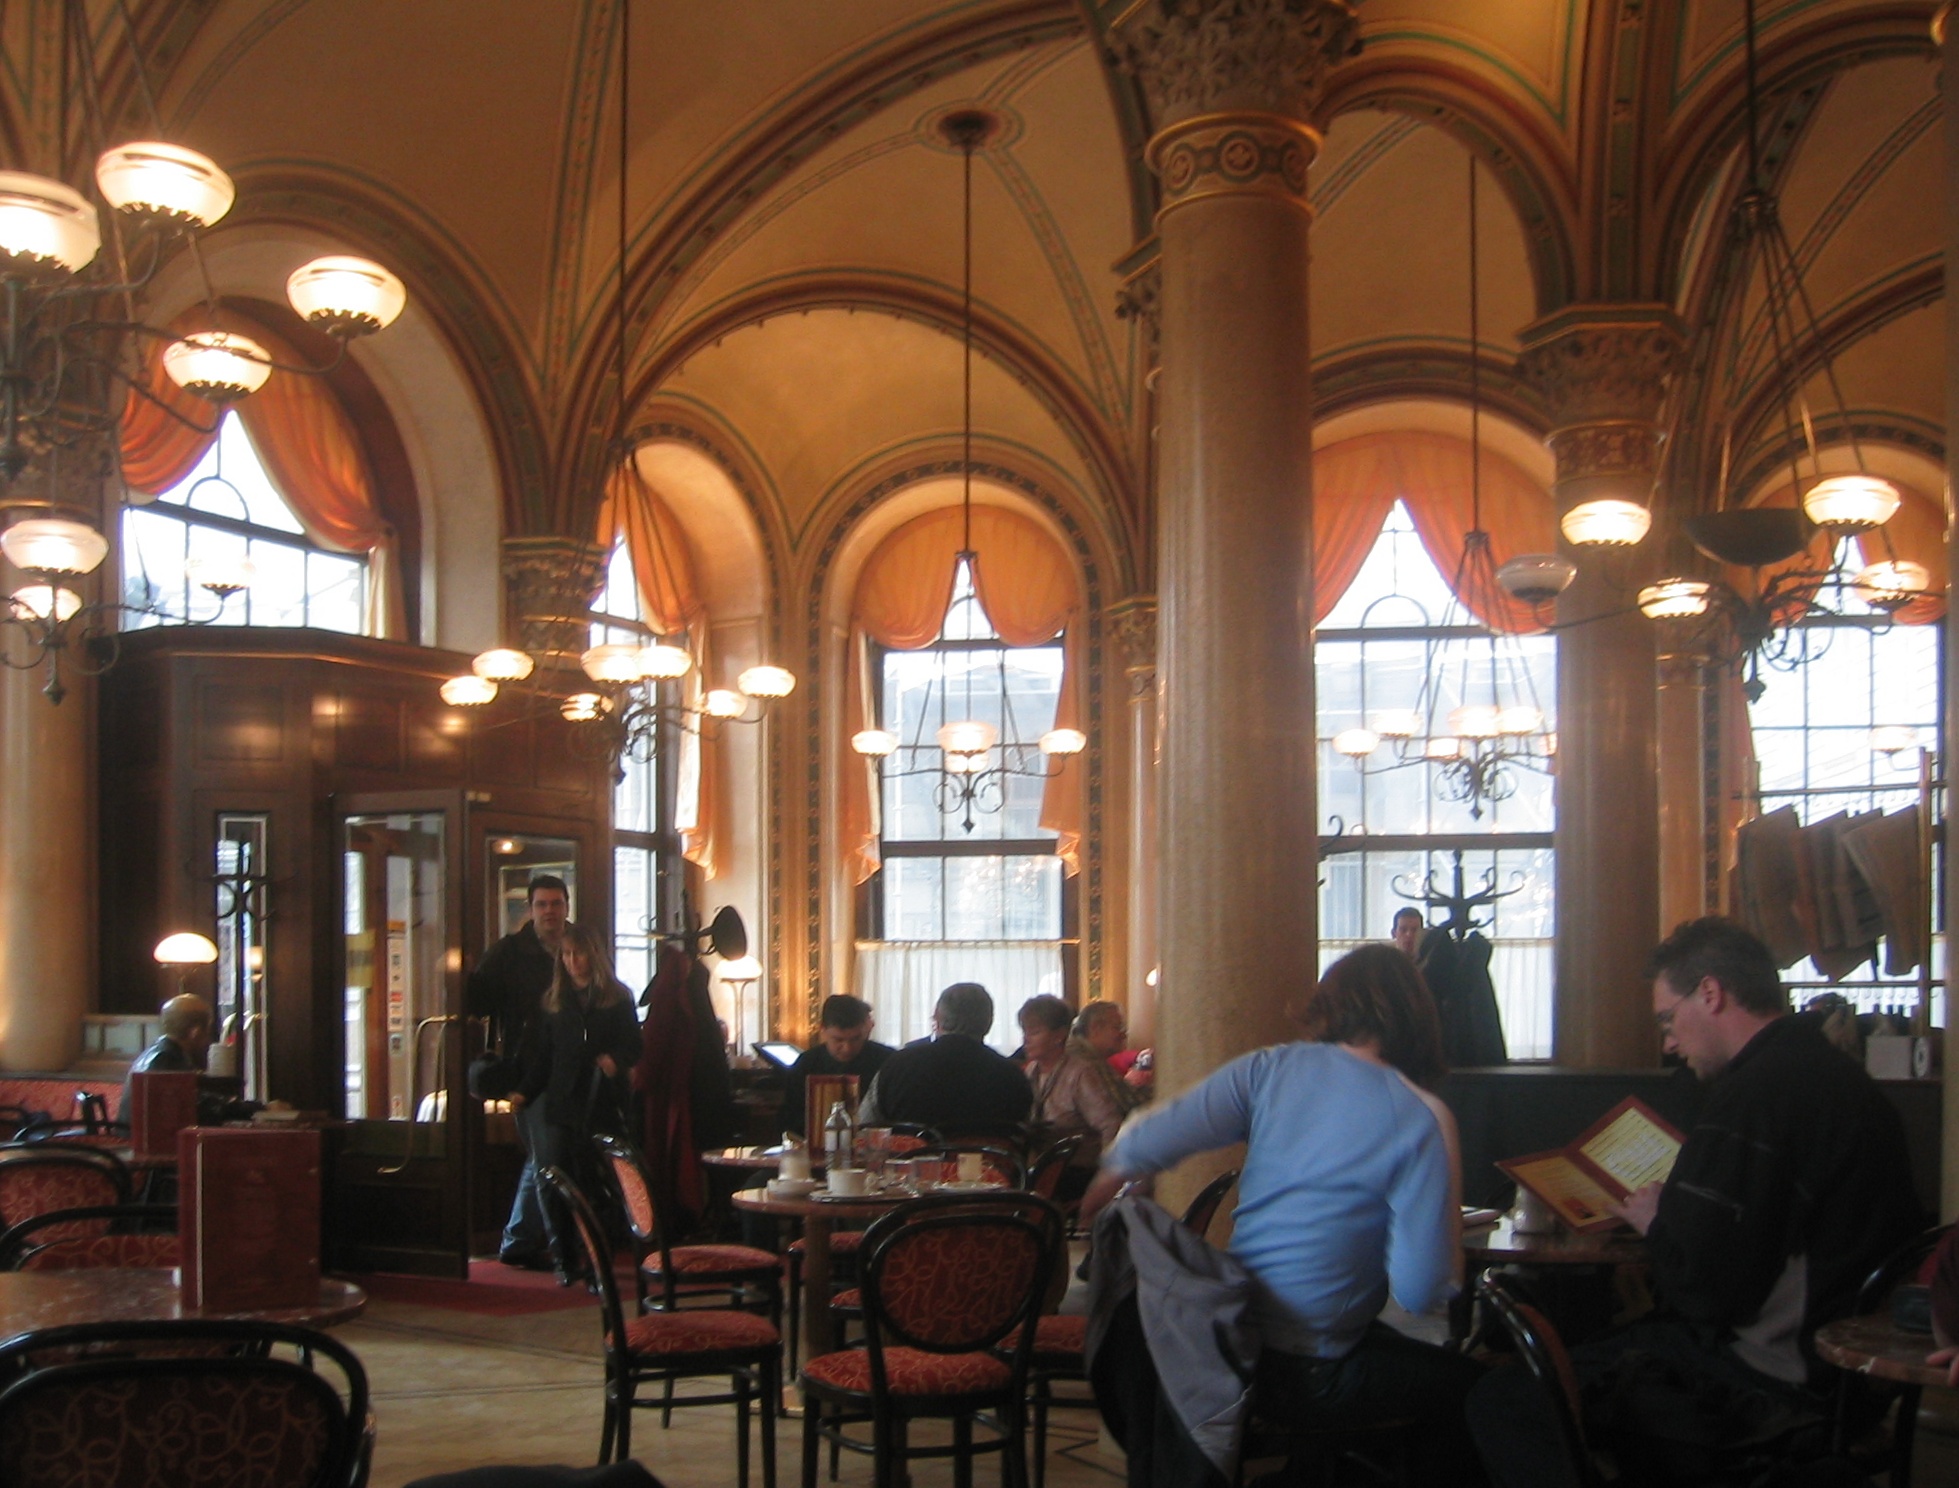 Abbildung 4 zeigt die Innenansicht des Café Central in Wien. Foto: Andreas Praefcke, Multilizenz mit GNU Free Documentation License (GFDL) und Creative Commons CC-BY-SA-3.0.